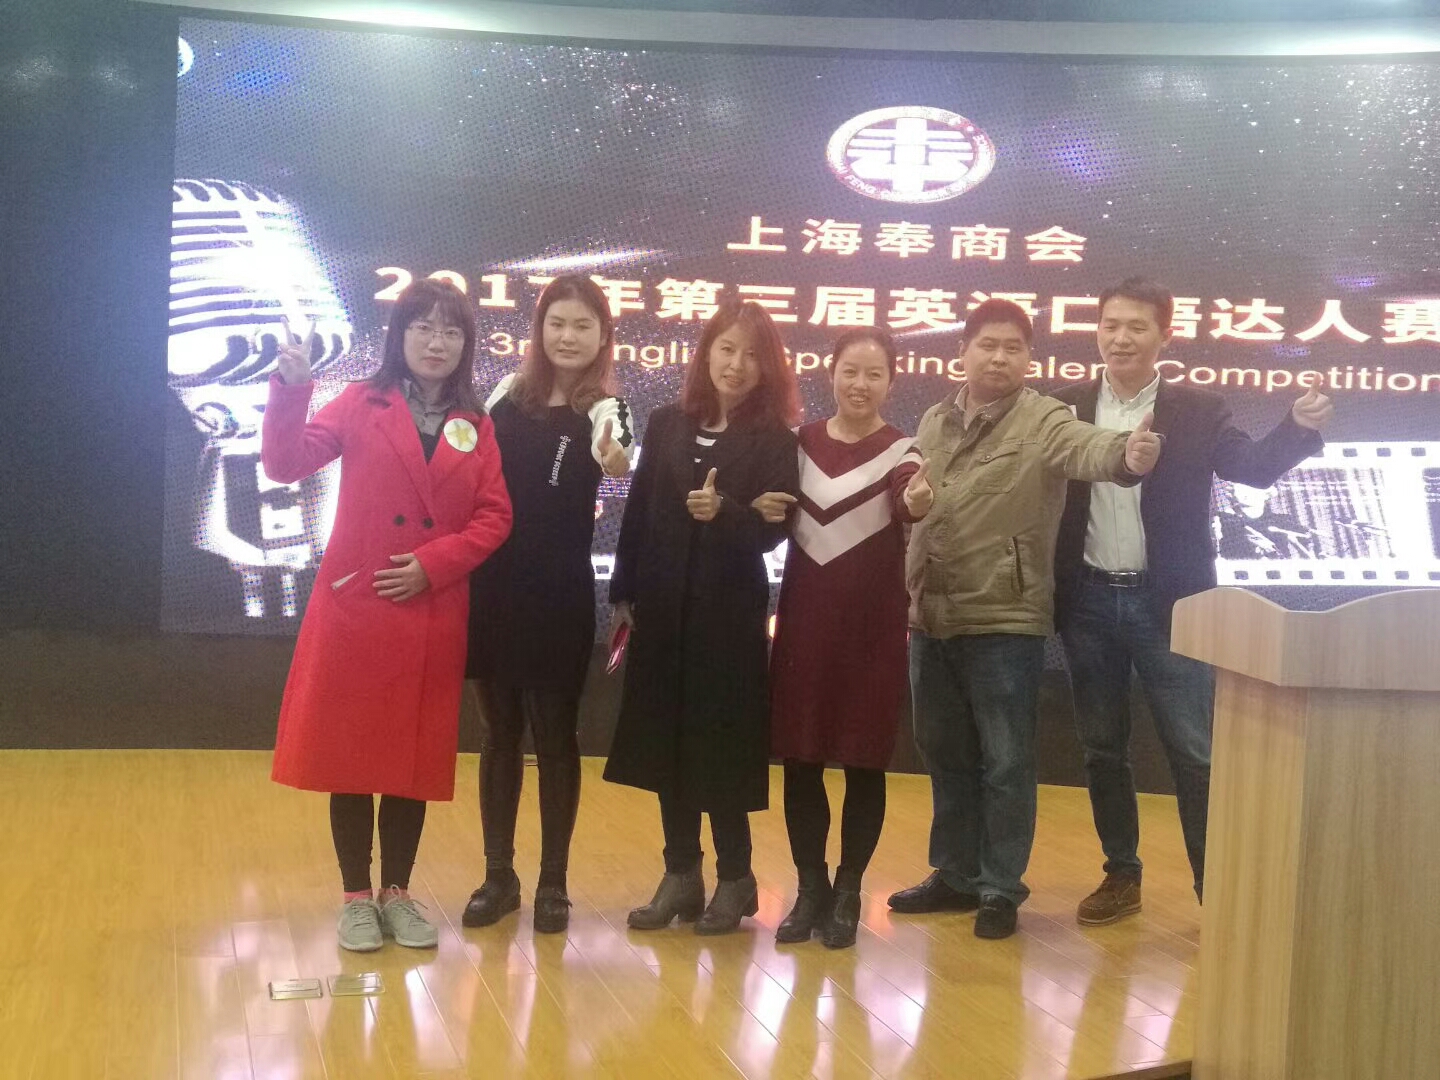 上海奉商会第三届英语口语大赛